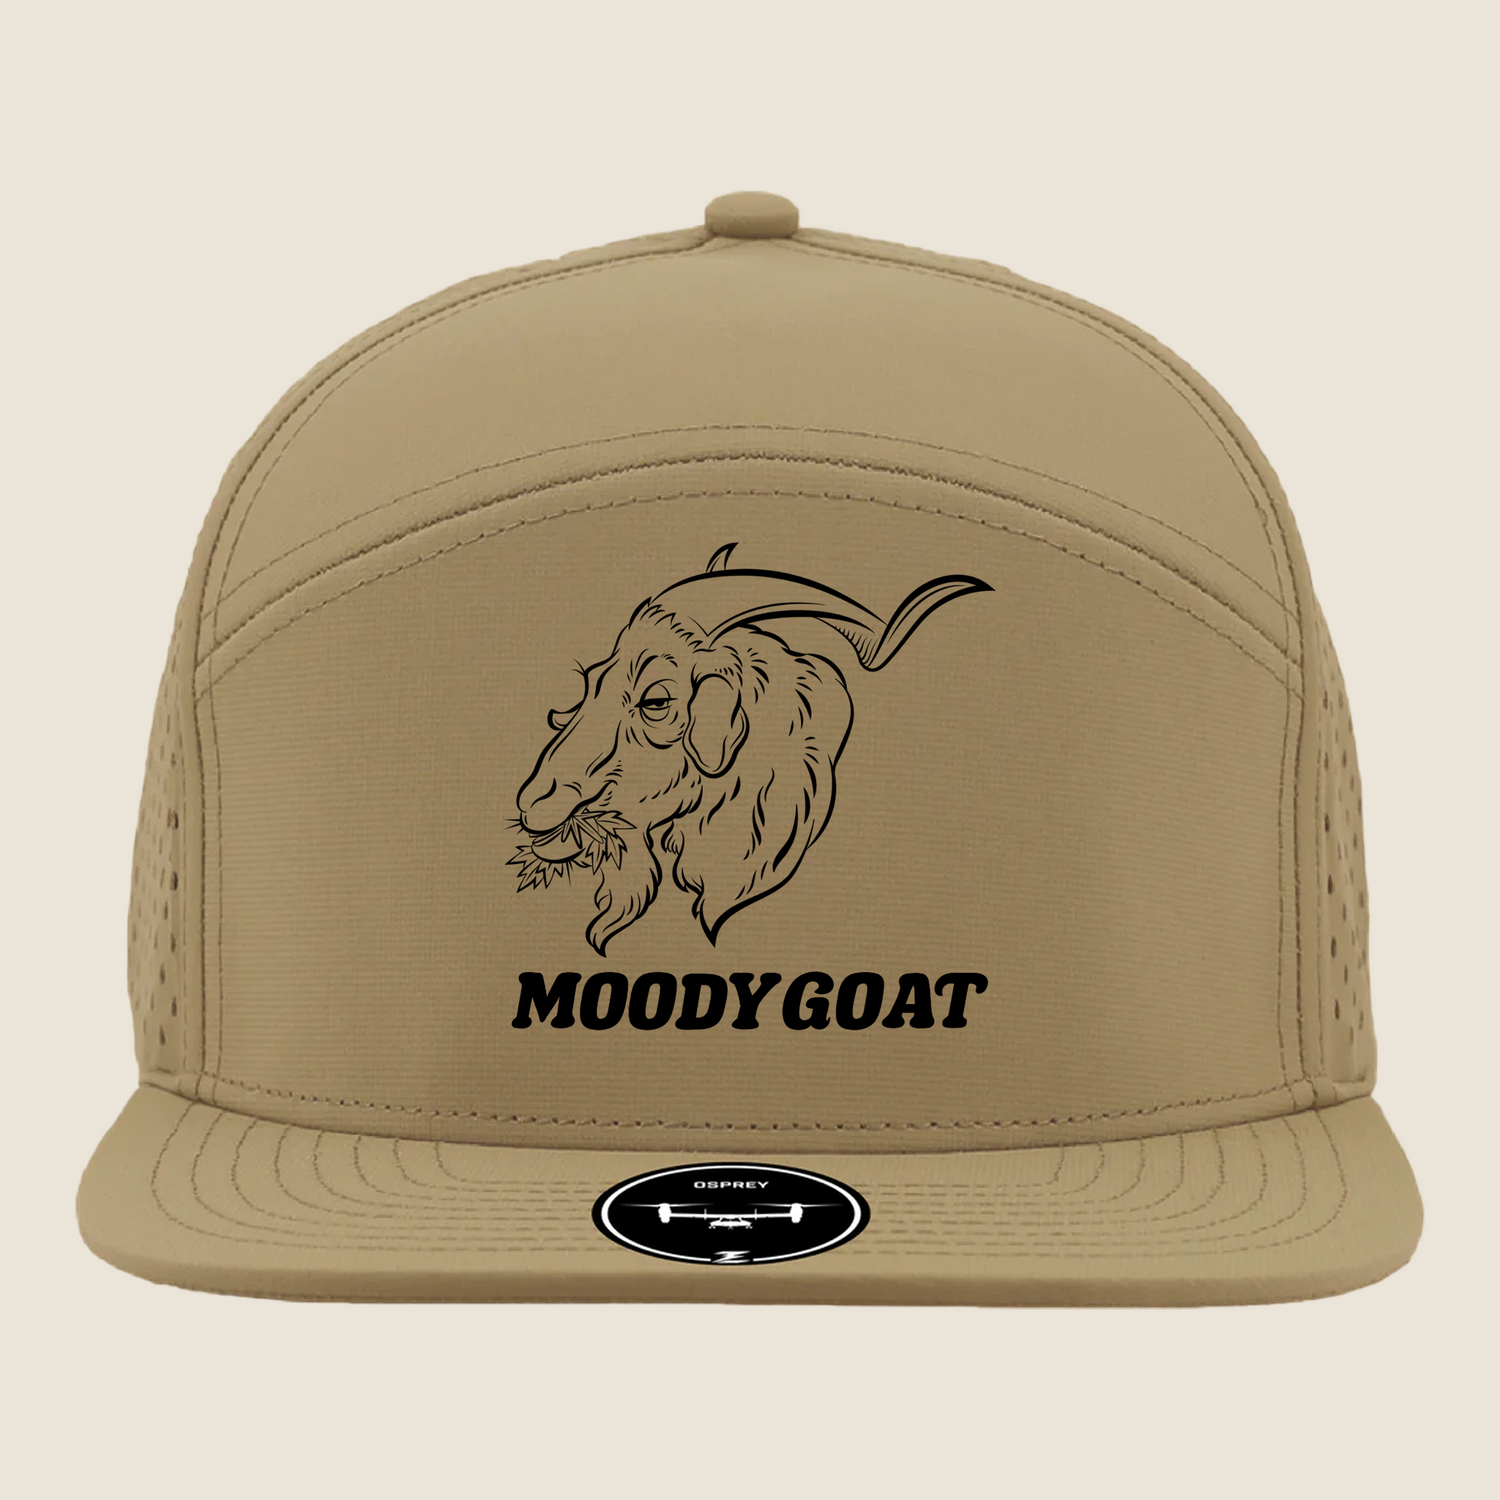 Moody Goat Headwear